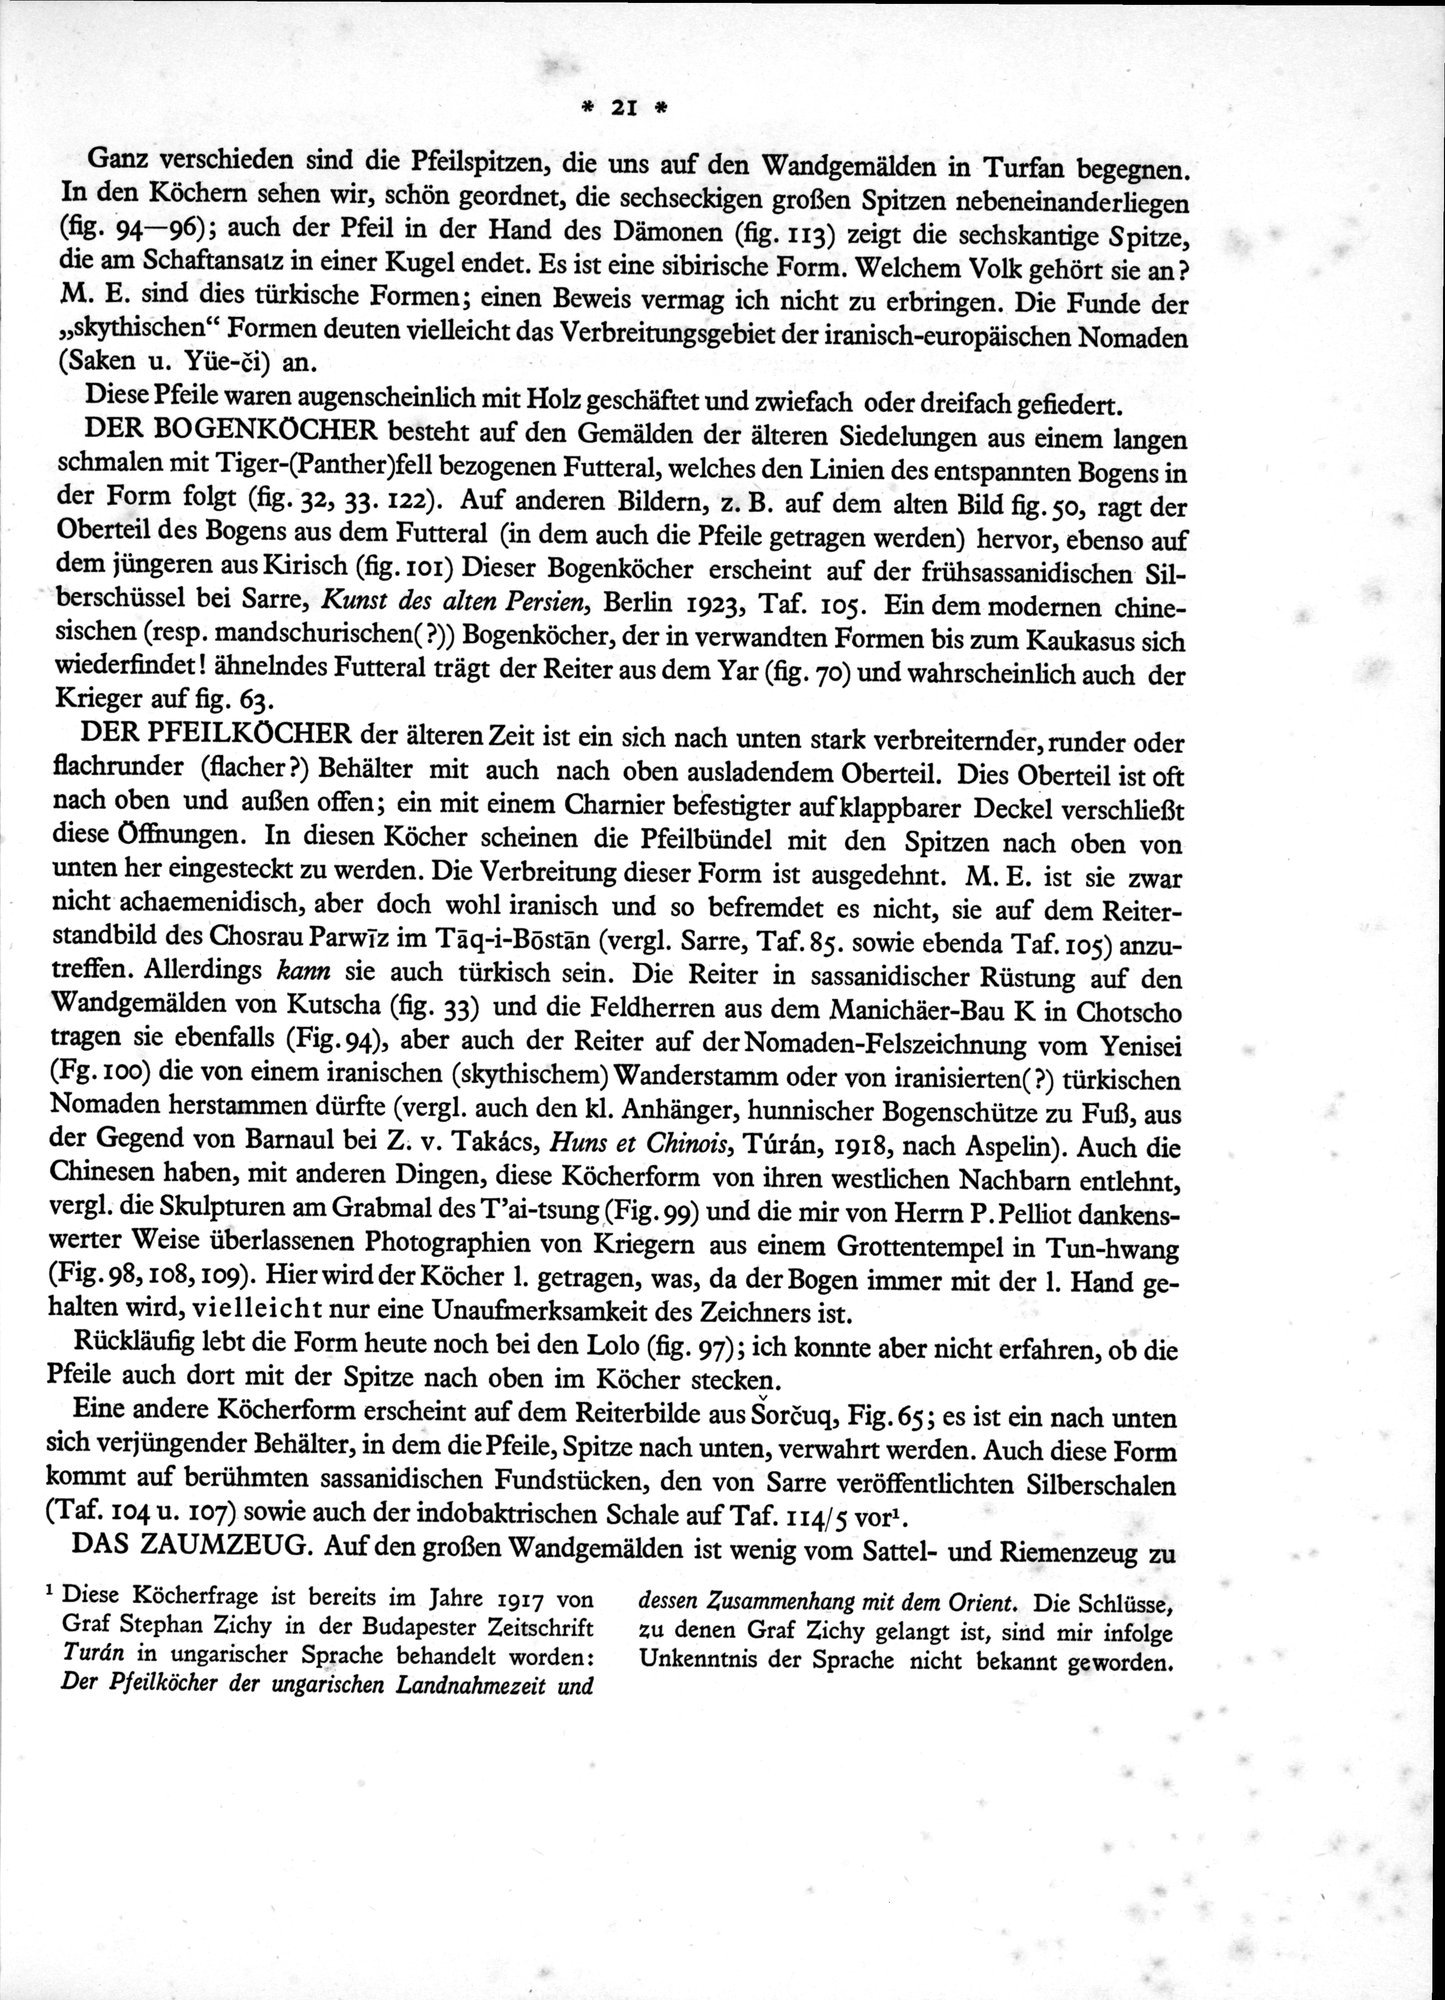 Bilderatlas zur Kunst und Kulturgeschichte Mittel-Asiens : vol.1 / Page 25 (Grayscale High Resolution Image)